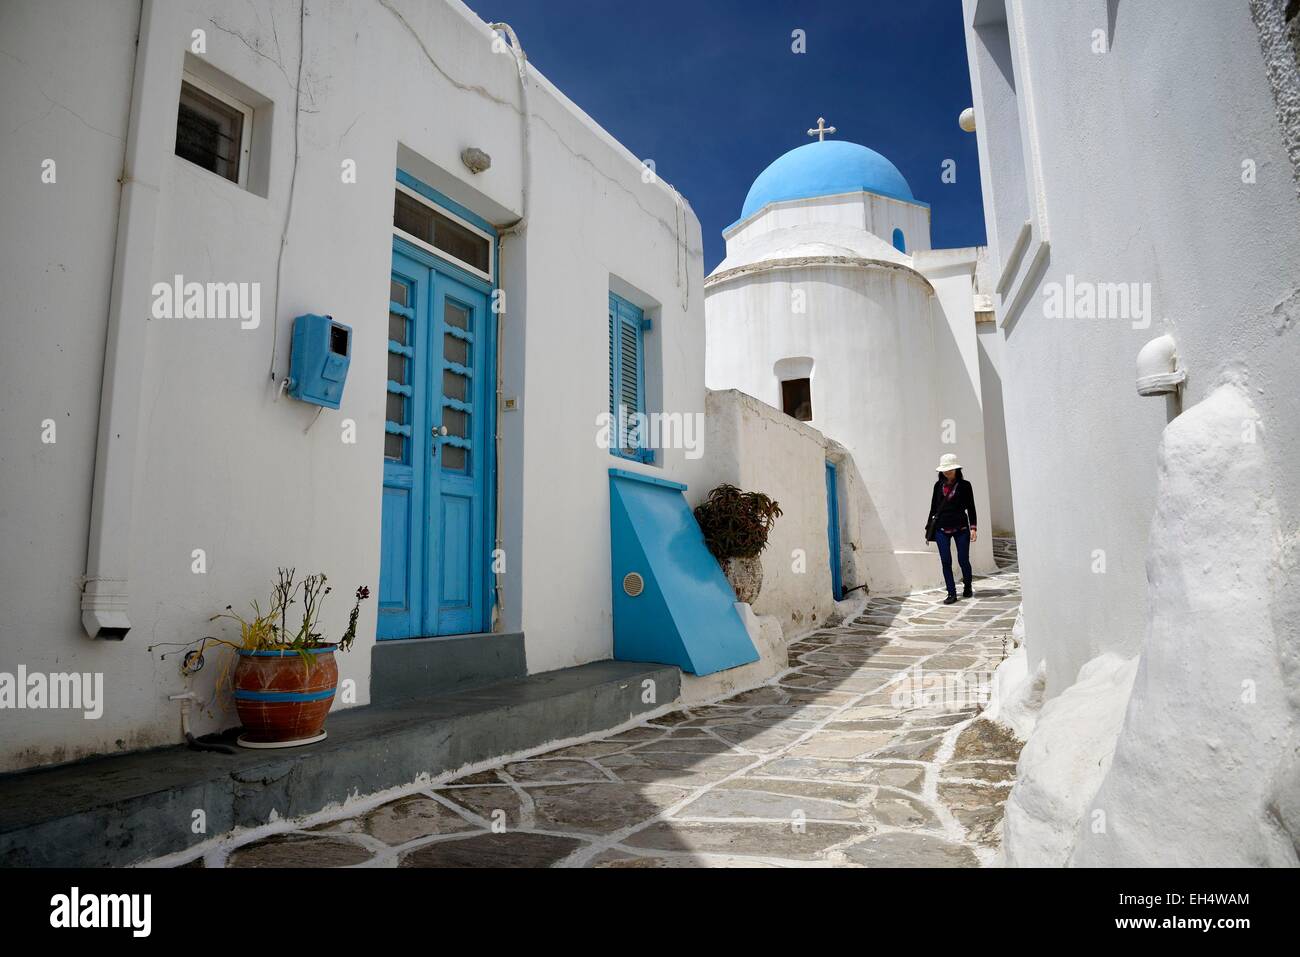 Griechenland, Kykladen, Insel Paros, Frau zu Fuß in einer schmalen Straße im Dorf Lefkes, kleine Kirche mit einem blauen DomeEmirats Arabes Unis Stockfoto